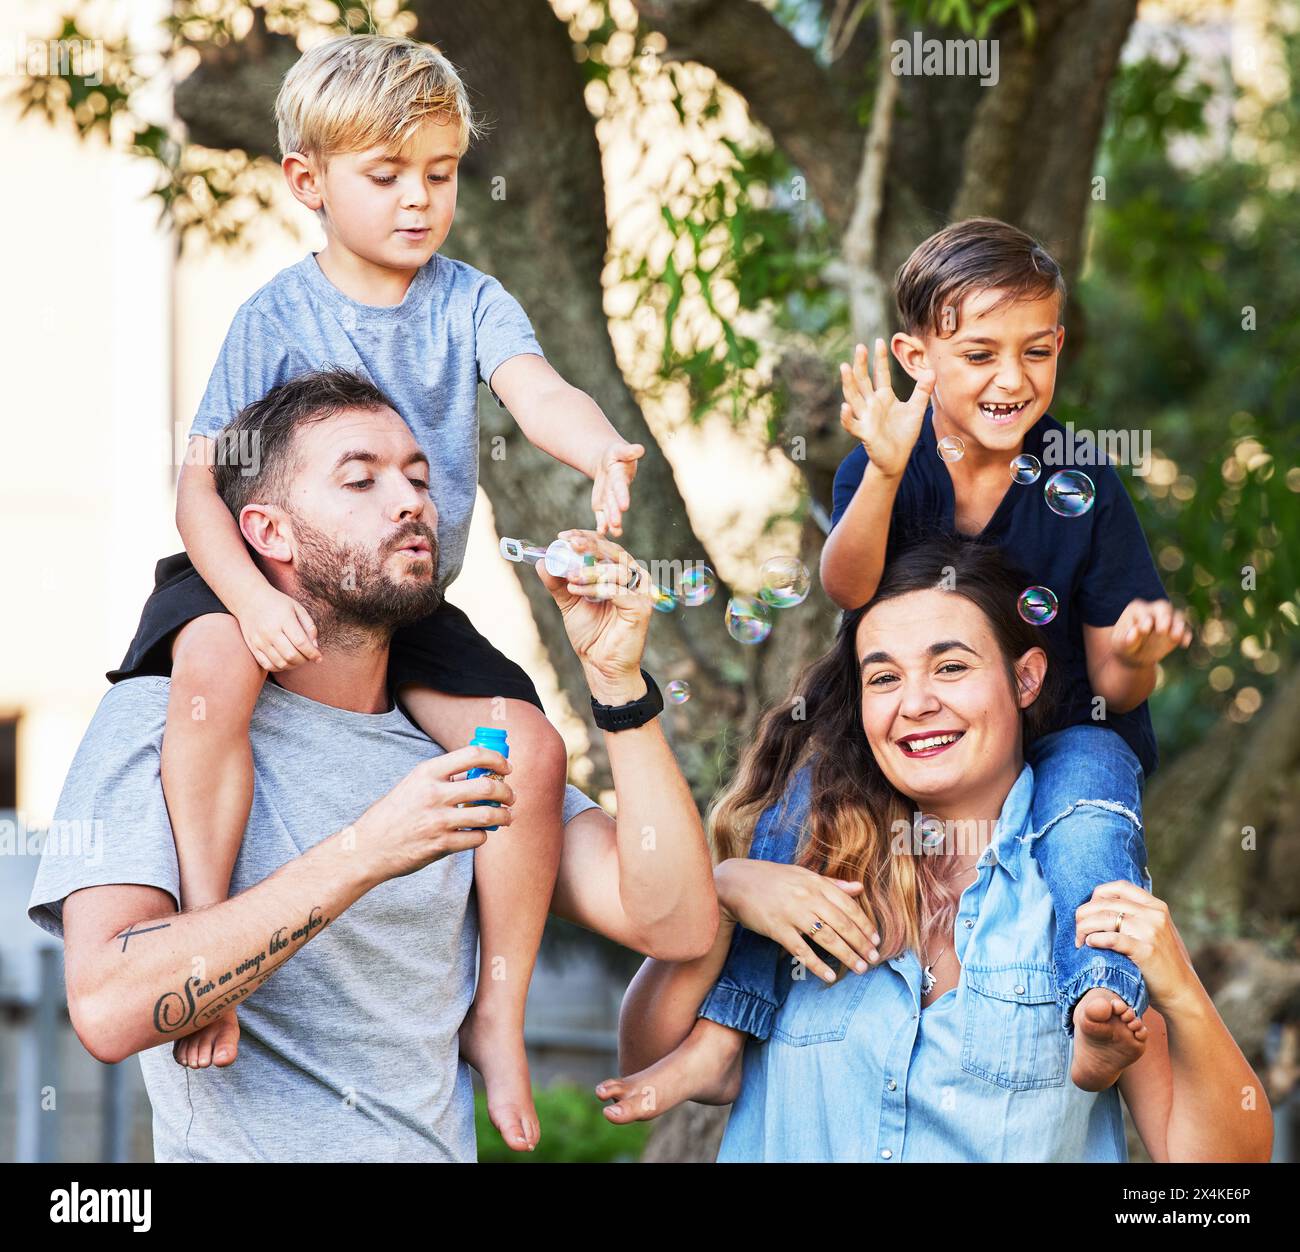 Paare, Kinder und lieben es mit Blasen im Park für eine glückliche Beziehung, Lernen und Familienzeit. Eltern, Kinder und Porträt im Freien zum Entspannen Stockfoto